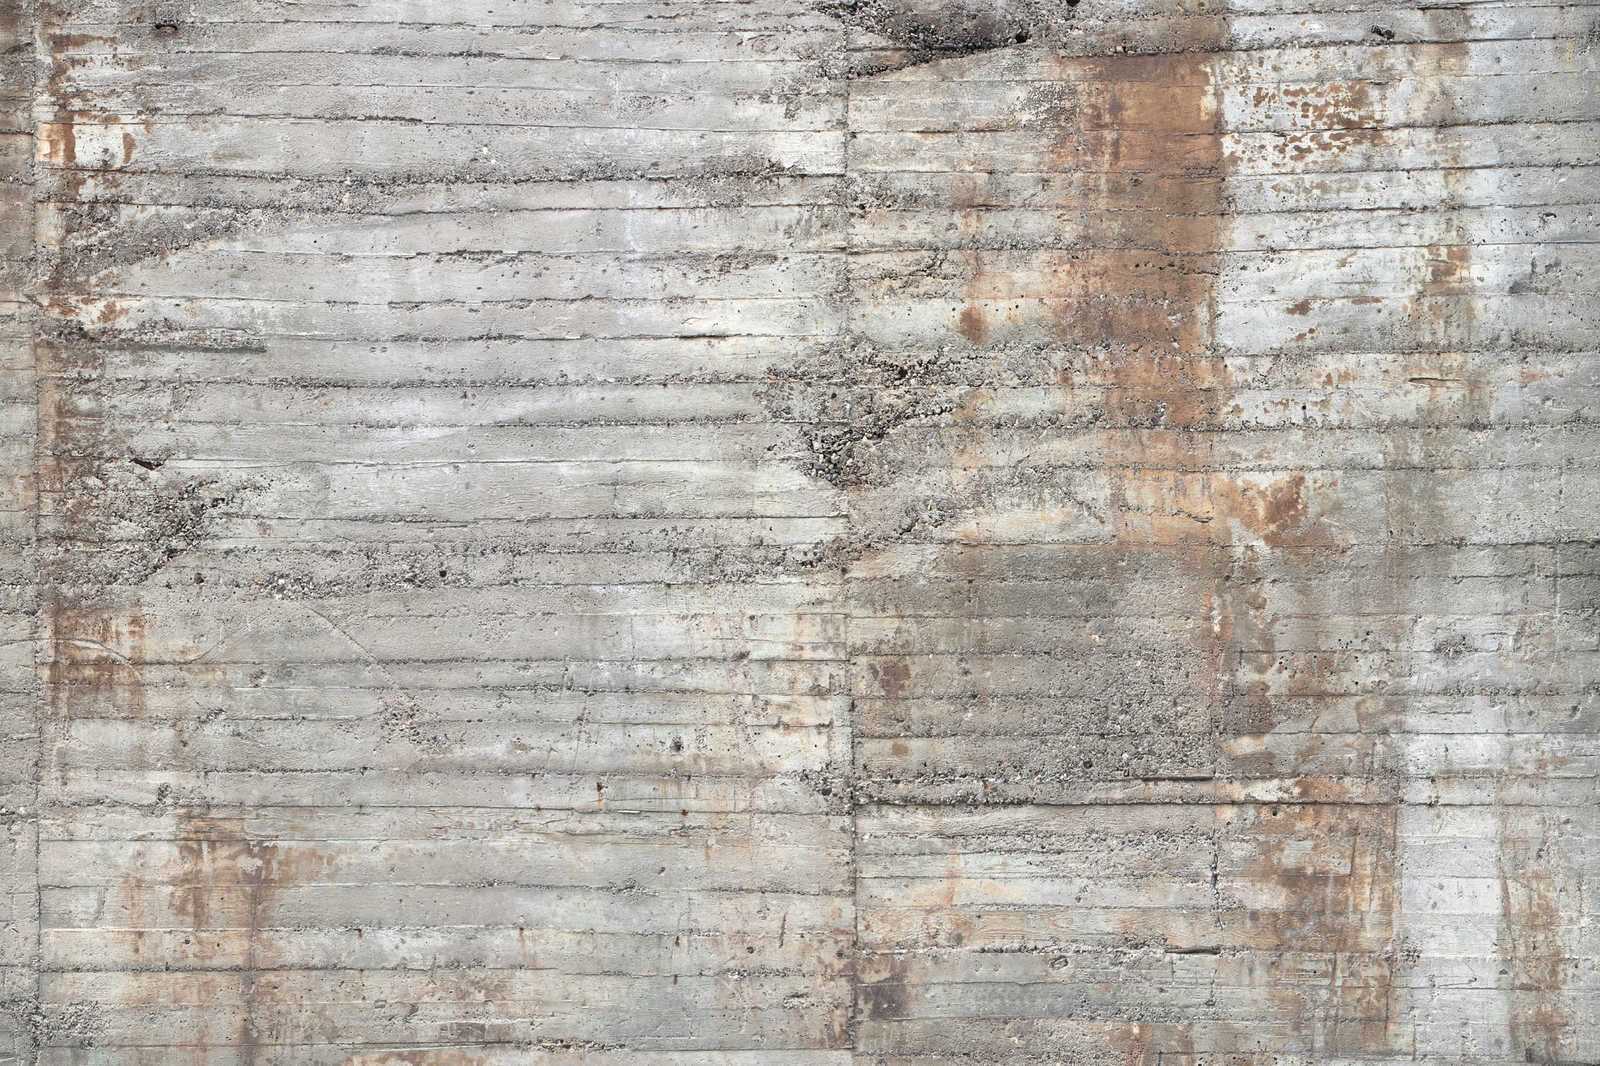             Tela di cemento dipinto Rustico cemento armato Grigio Marrone - 0,90 m x 0,60 m
        